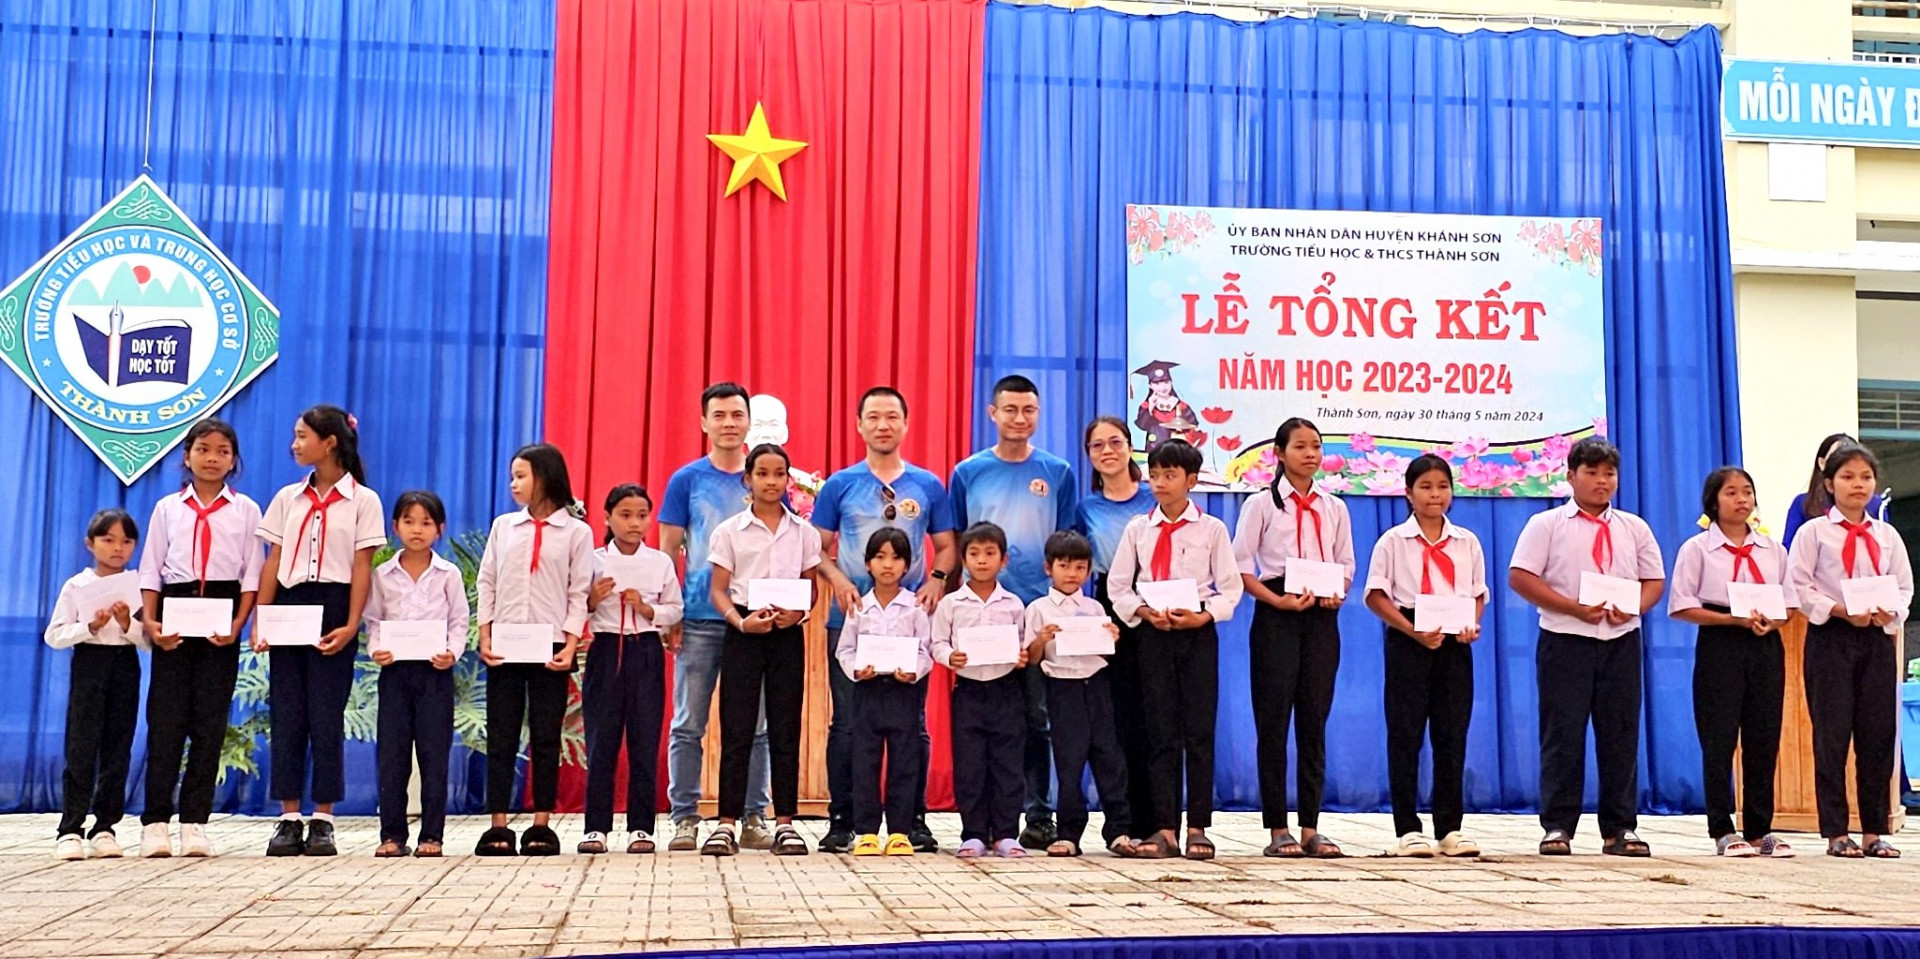 Đại diện Câu lạc bộ trao học bổng cho học sinh Trường Tiểu học và THCS Thành Sơn.